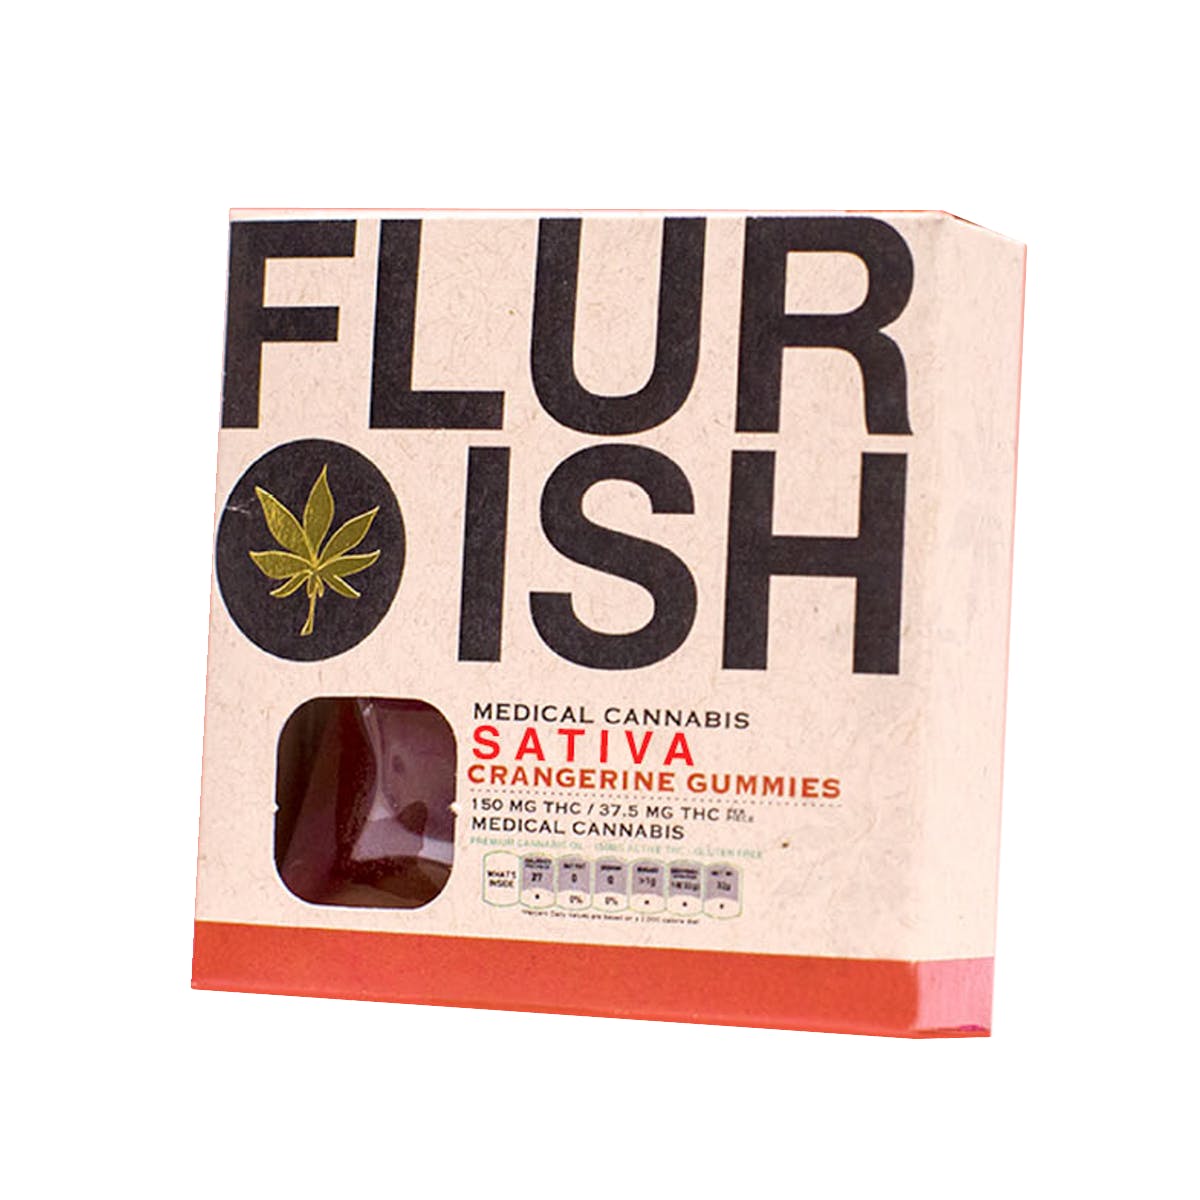 edible-flurish-crangerine-gummies-2c-sativa-150mg